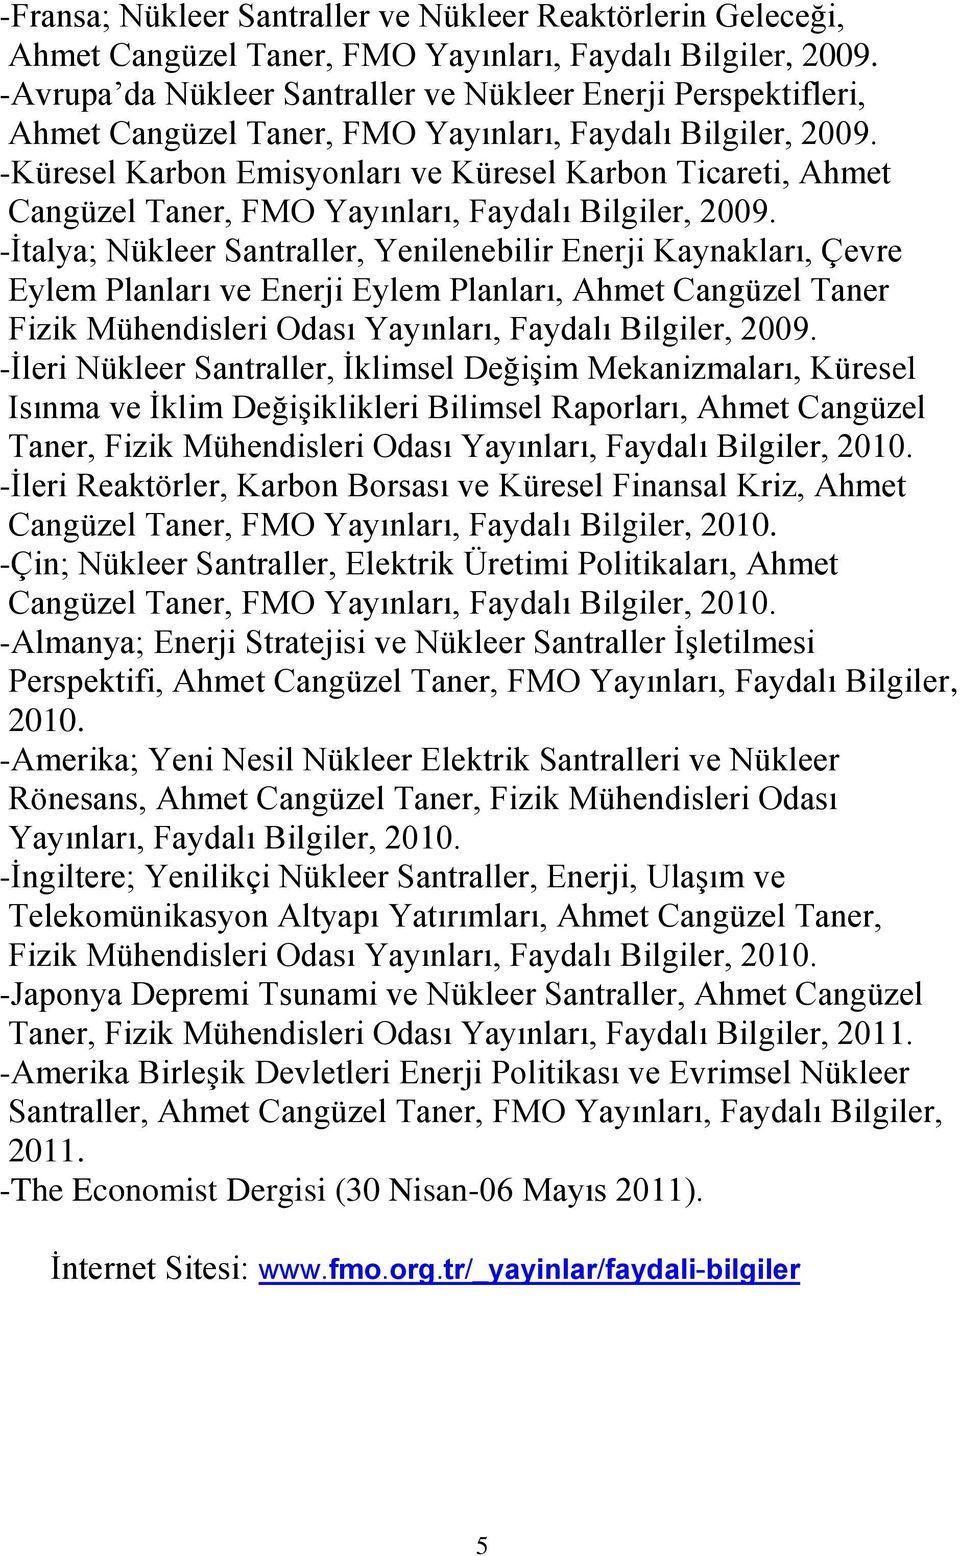 -Küresel Karbon Emisyonları ve Küresel Karbon Ticareti, Ahmet Cangüzel Taner, FMO Yayınları, Faydalı Bilgiler, 2009.